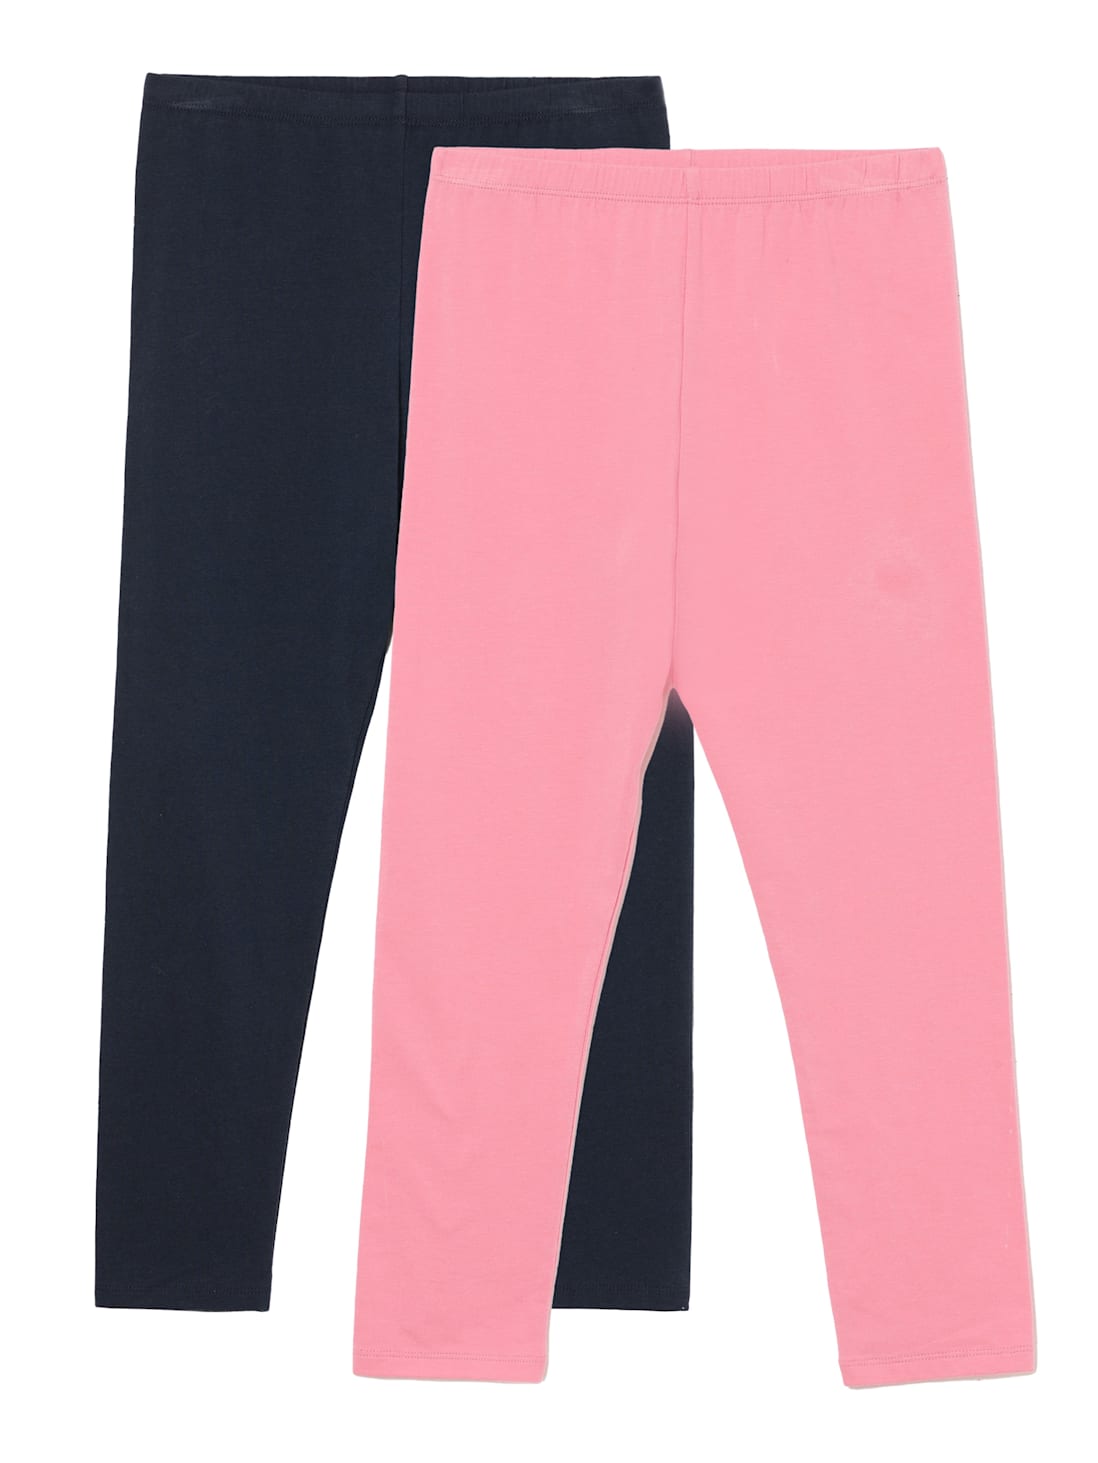 GlideSoul 1mm Neoprene Pants Women's Pink/Silver